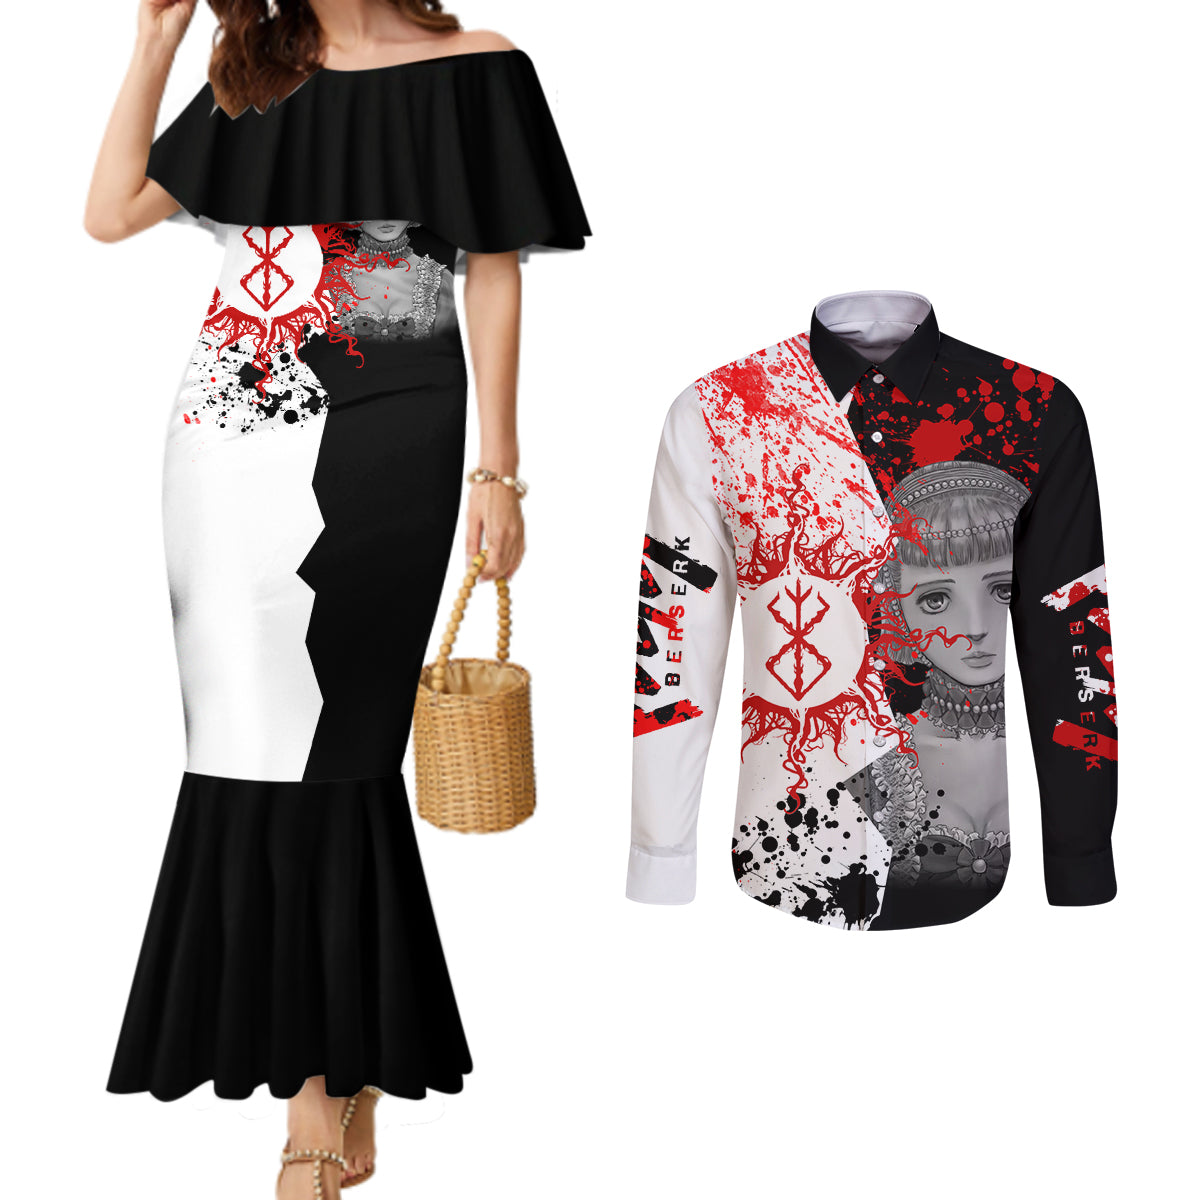 Farnese de Vandimion Berserk Couples Matching Mermaid Dress and Long Sleeve Button Shirt Grunge Blood Style